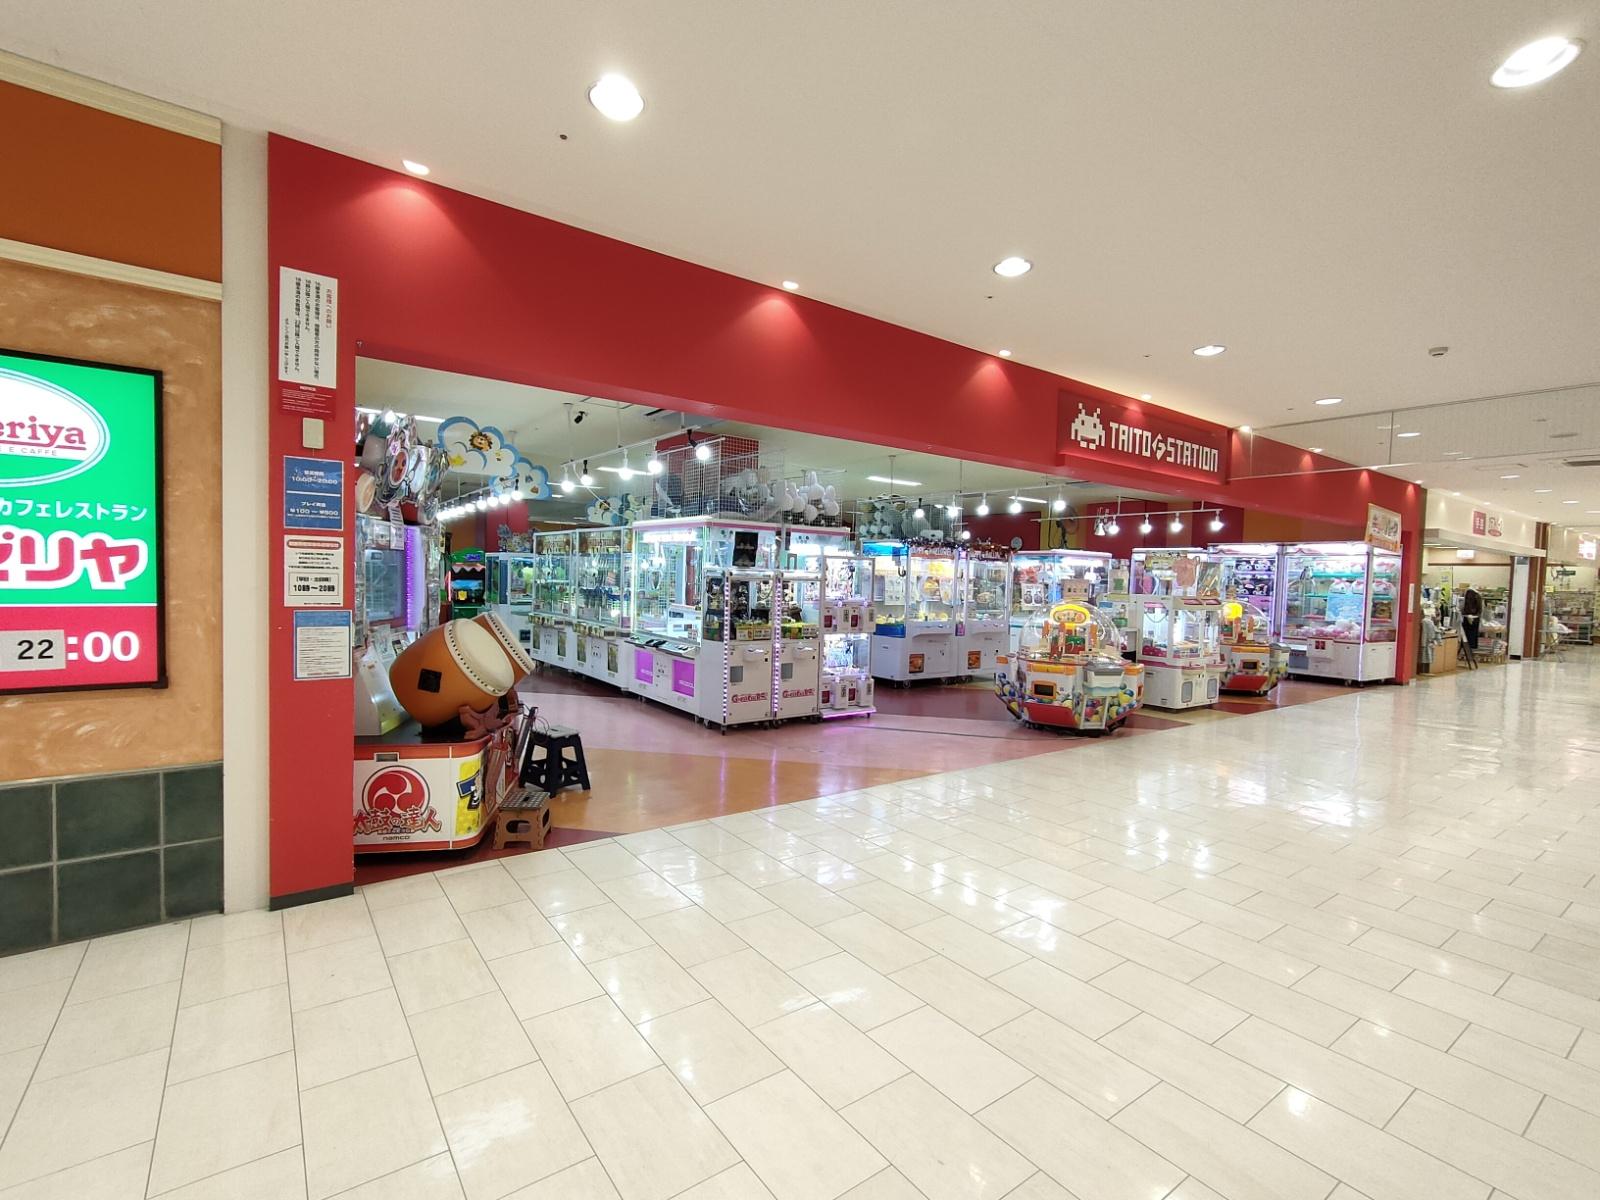 「セントラルシティ・和歌山」でよく利用するお店はキャンドゥとタイトーFステーションです。